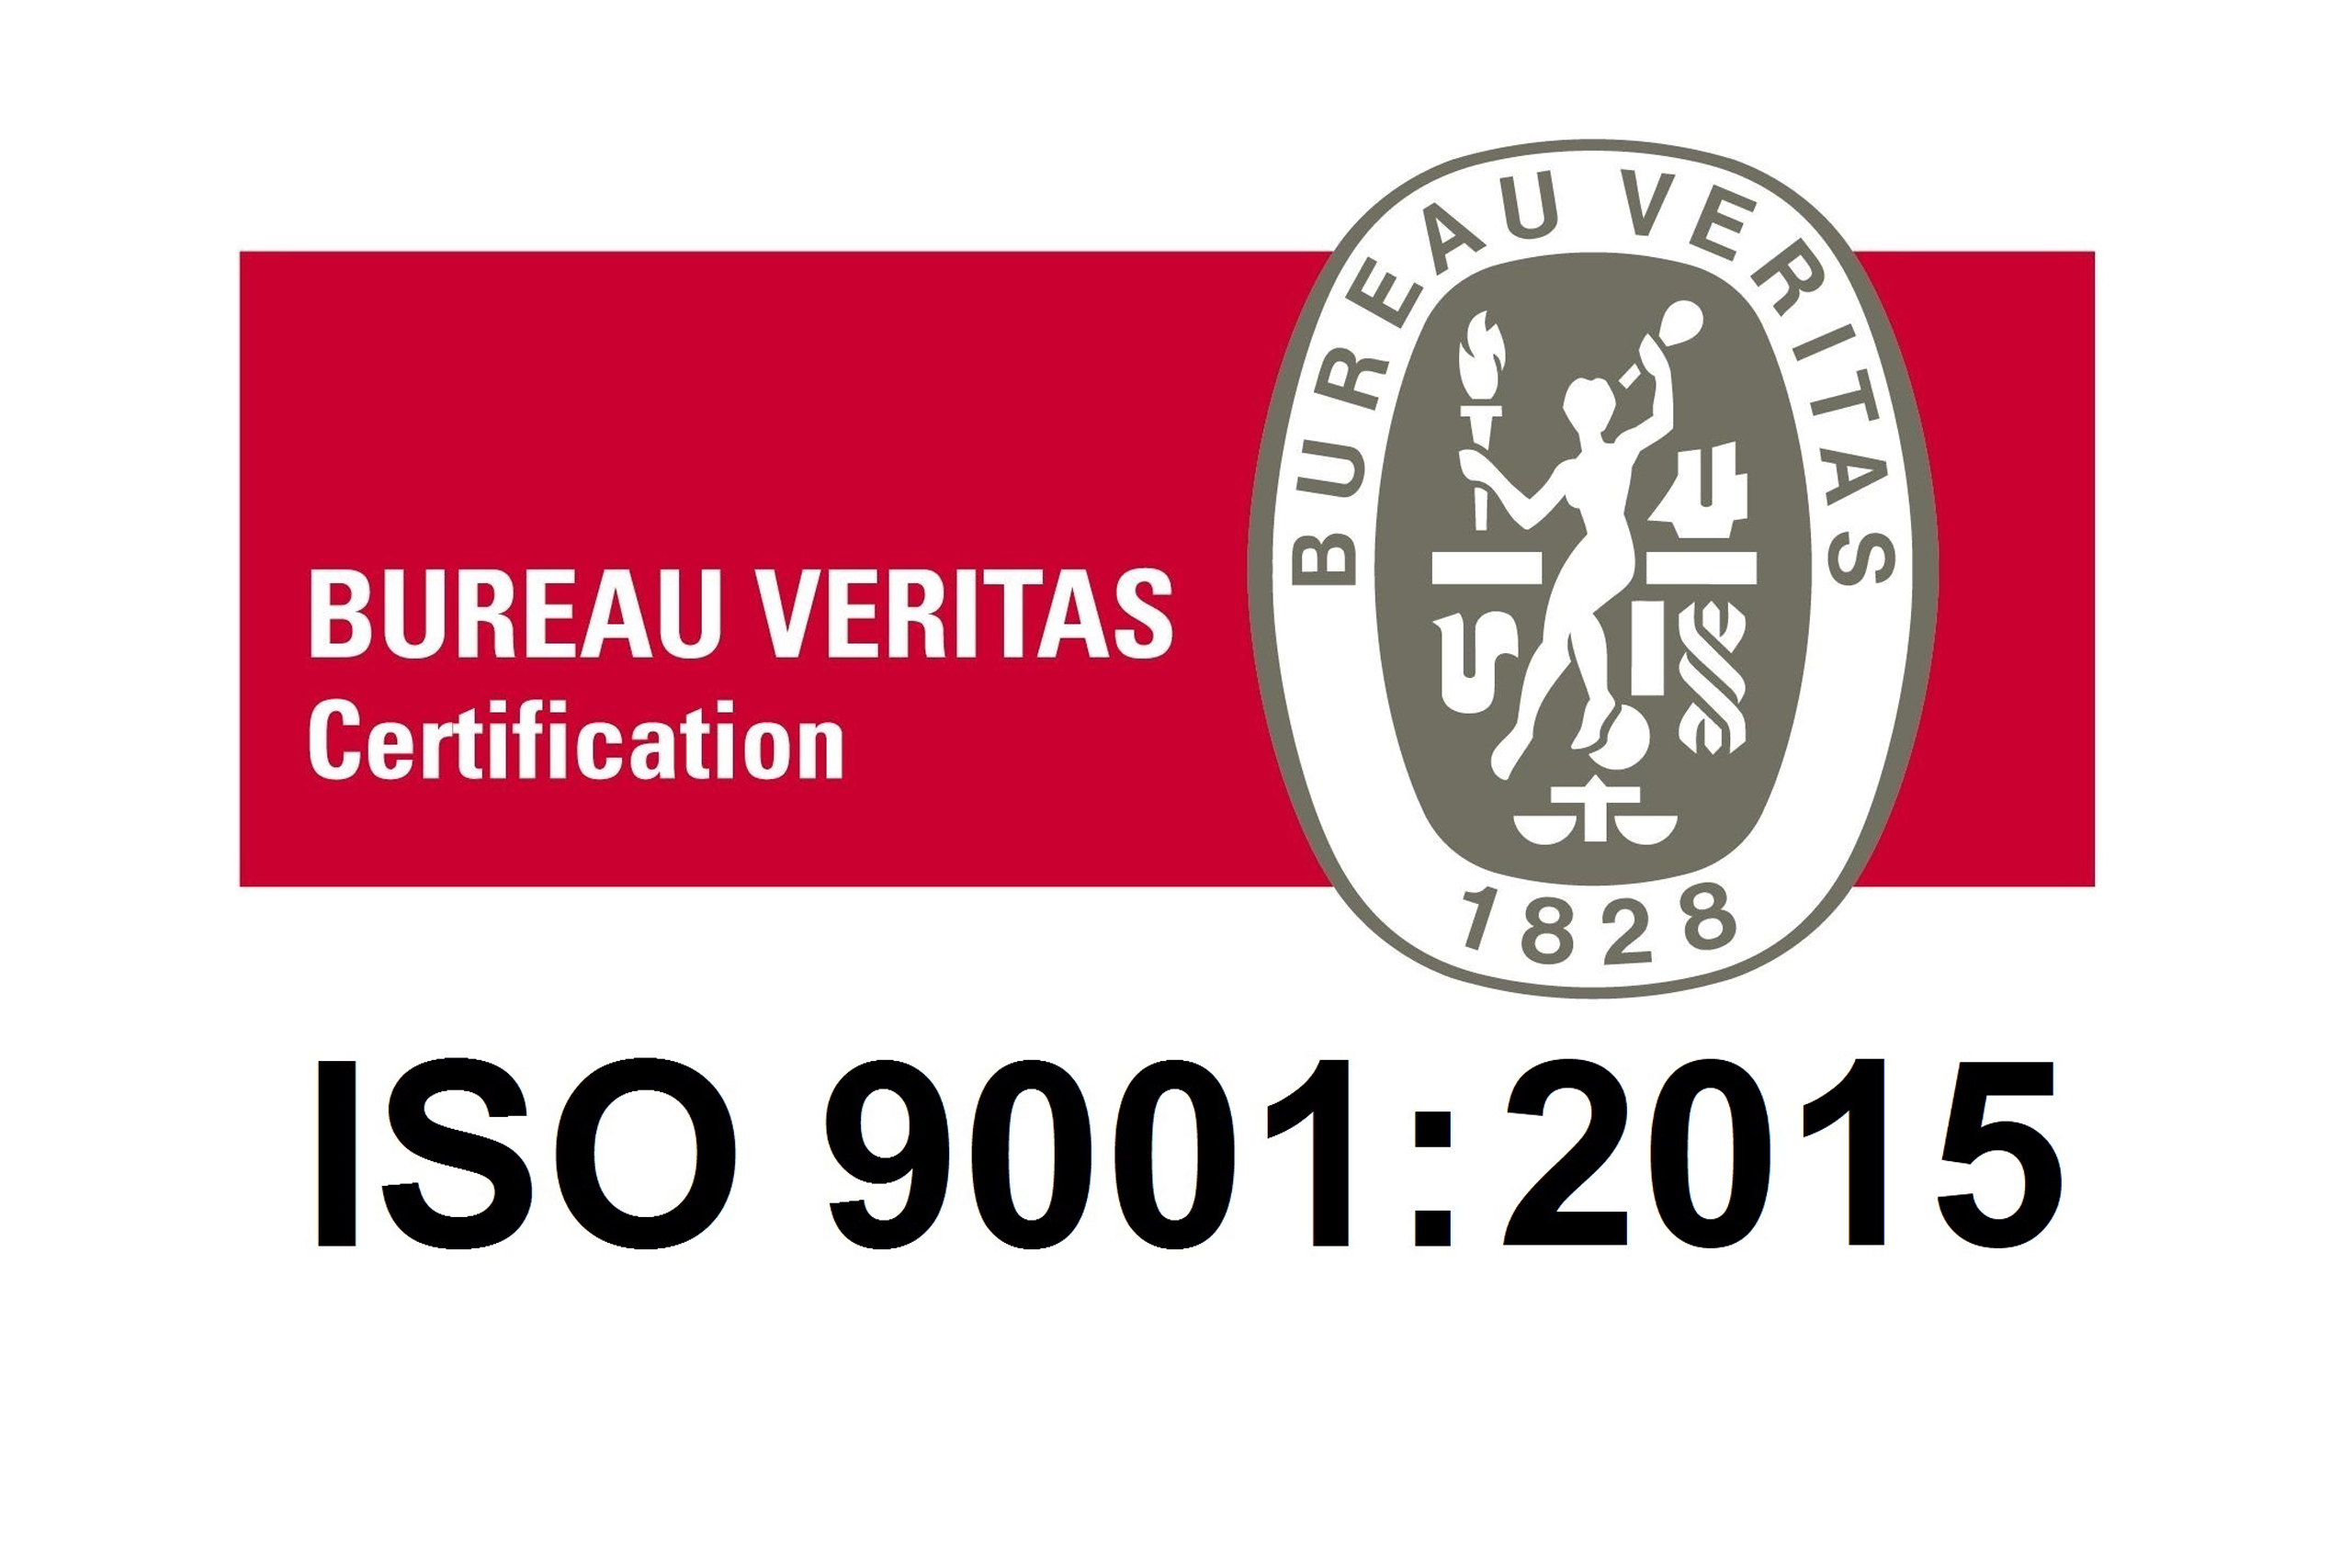 Ооо мкк веритас. Логотип бюро Веритас Русь. Bureau veritas 9001. ISO 9001 Bureau veritas Certification. Бюро Веритас Москва.